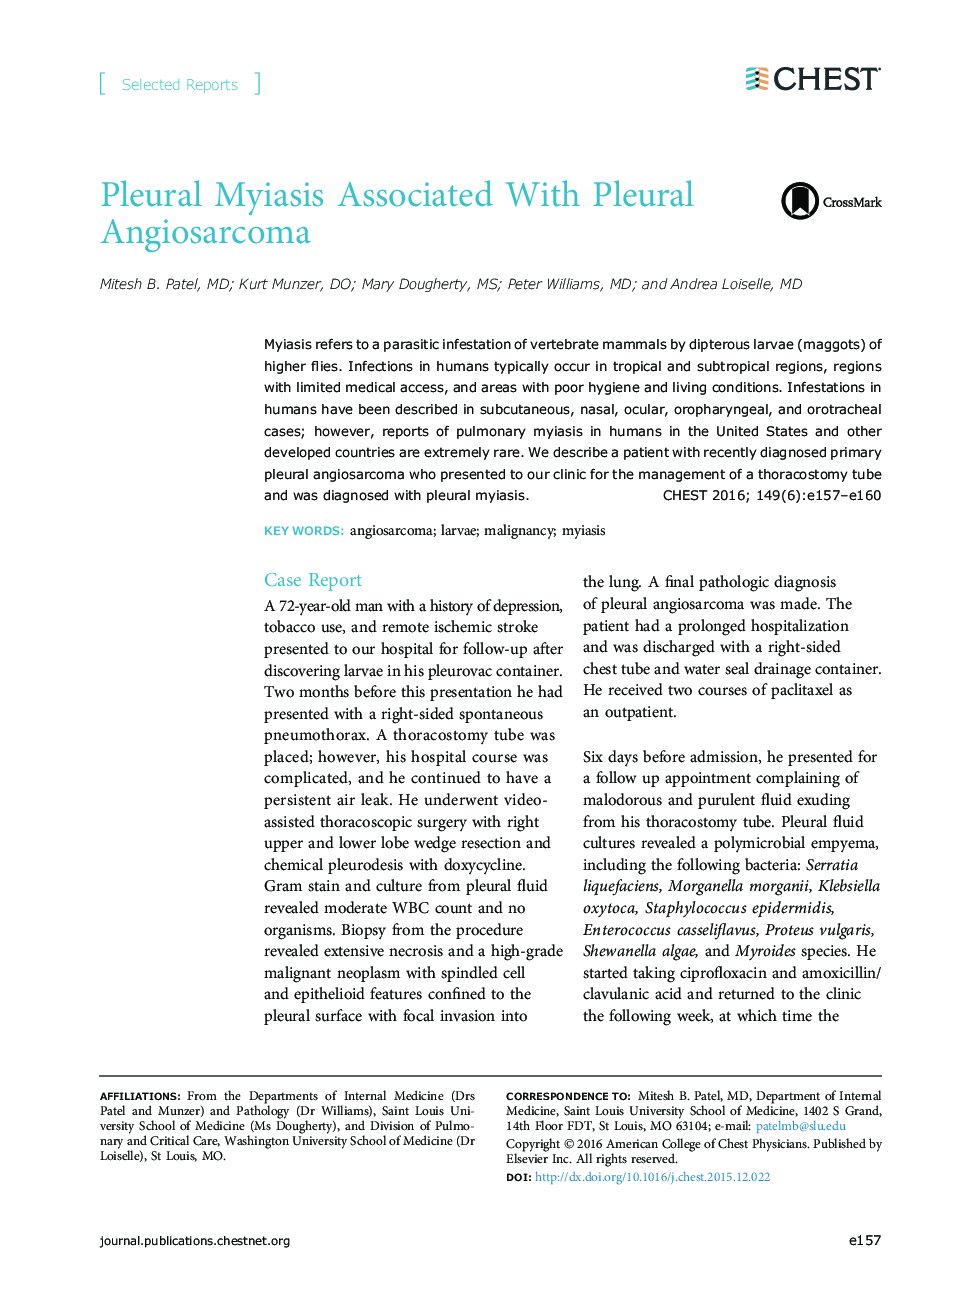 مایع عصب پلورال با آنیوسارکوم پلورال مرتبط است 